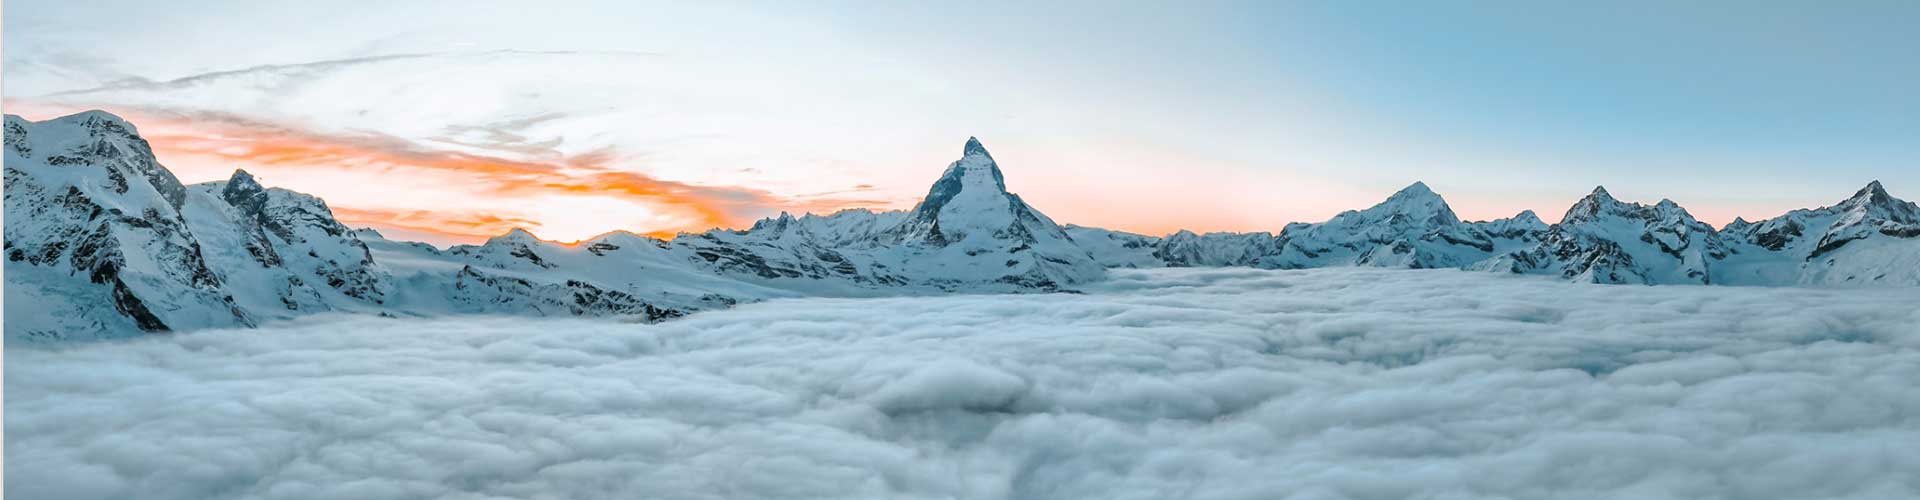 Zermatt am Matterhorn